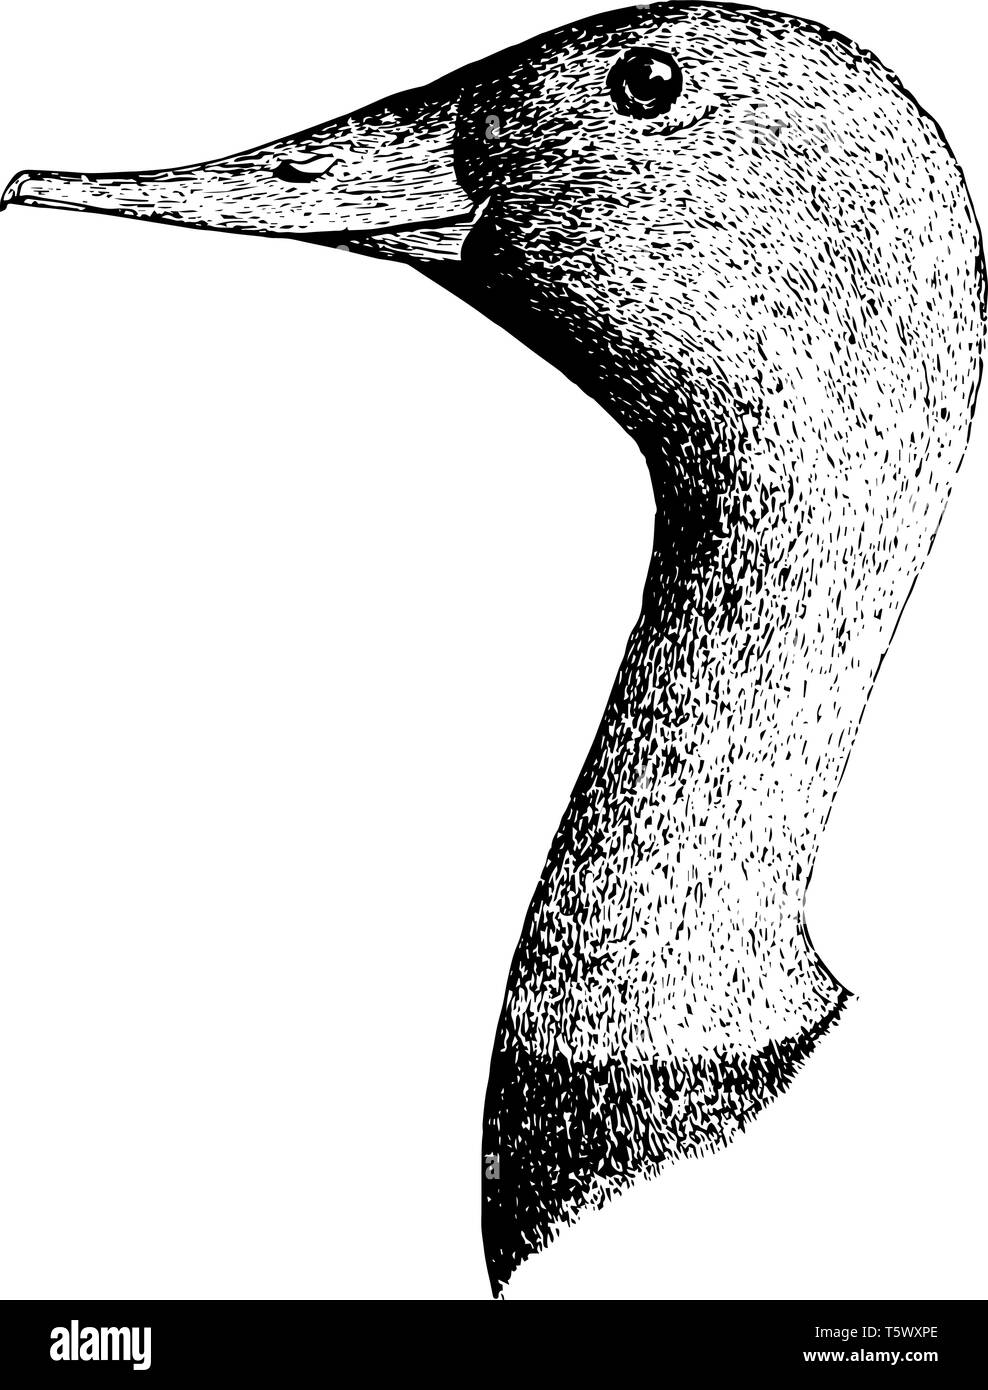 Große Leinwand rücken Kopf in denen Bill hoch an der Basis und engen während oder gegen Ende kaum vintage Strichzeichnung oder Gravur illustra verbreitert Stock Vektor